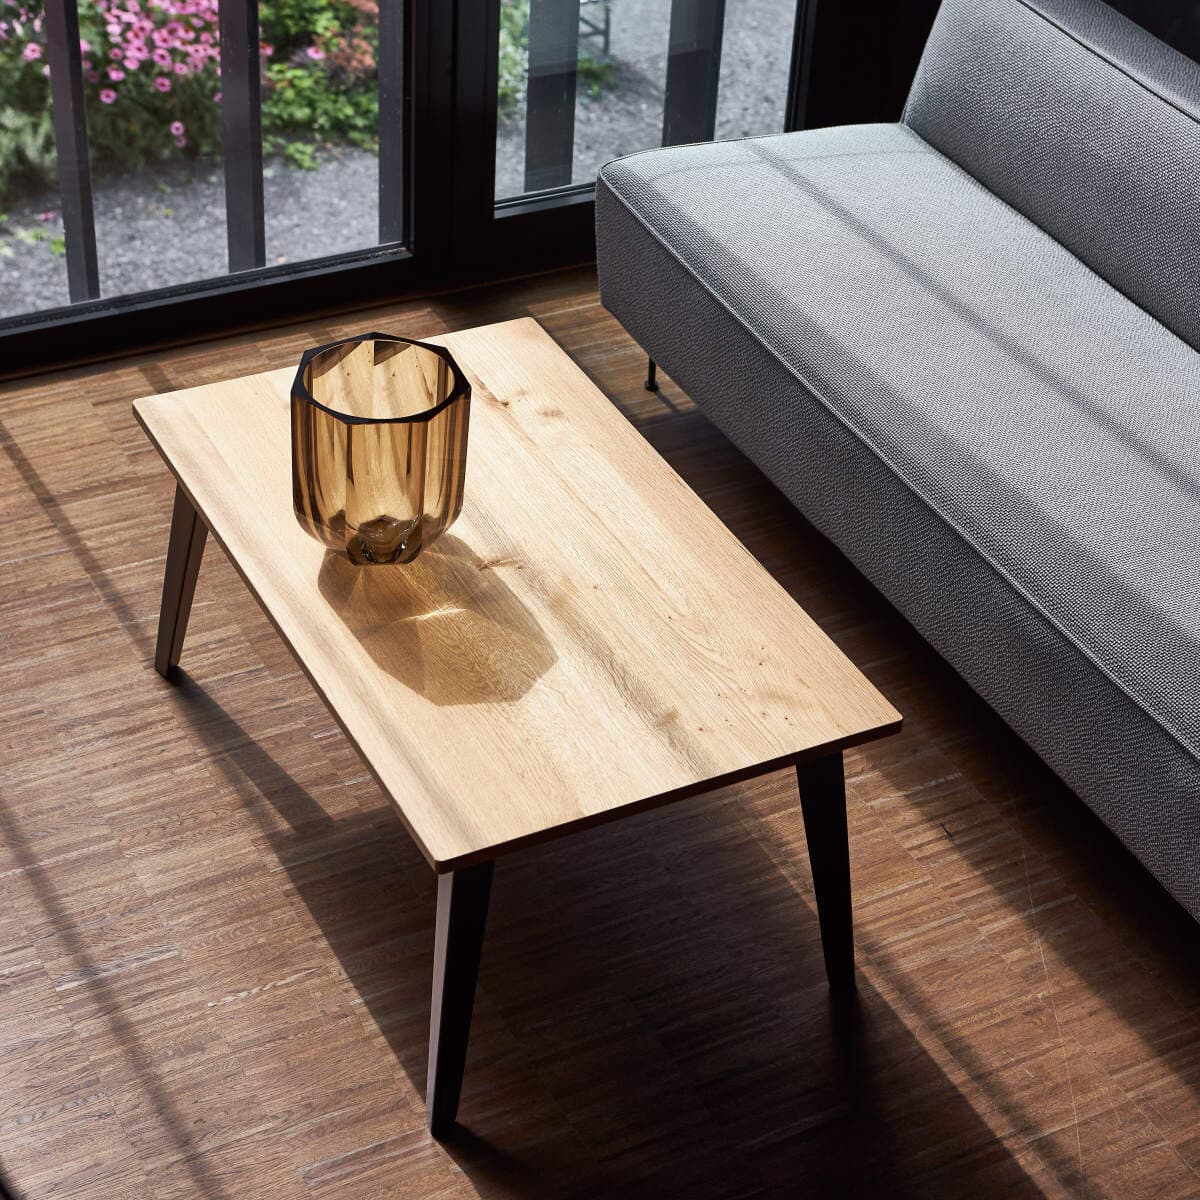 Designový konferenční stolek s dubovou deskou a kovovýma nohama.